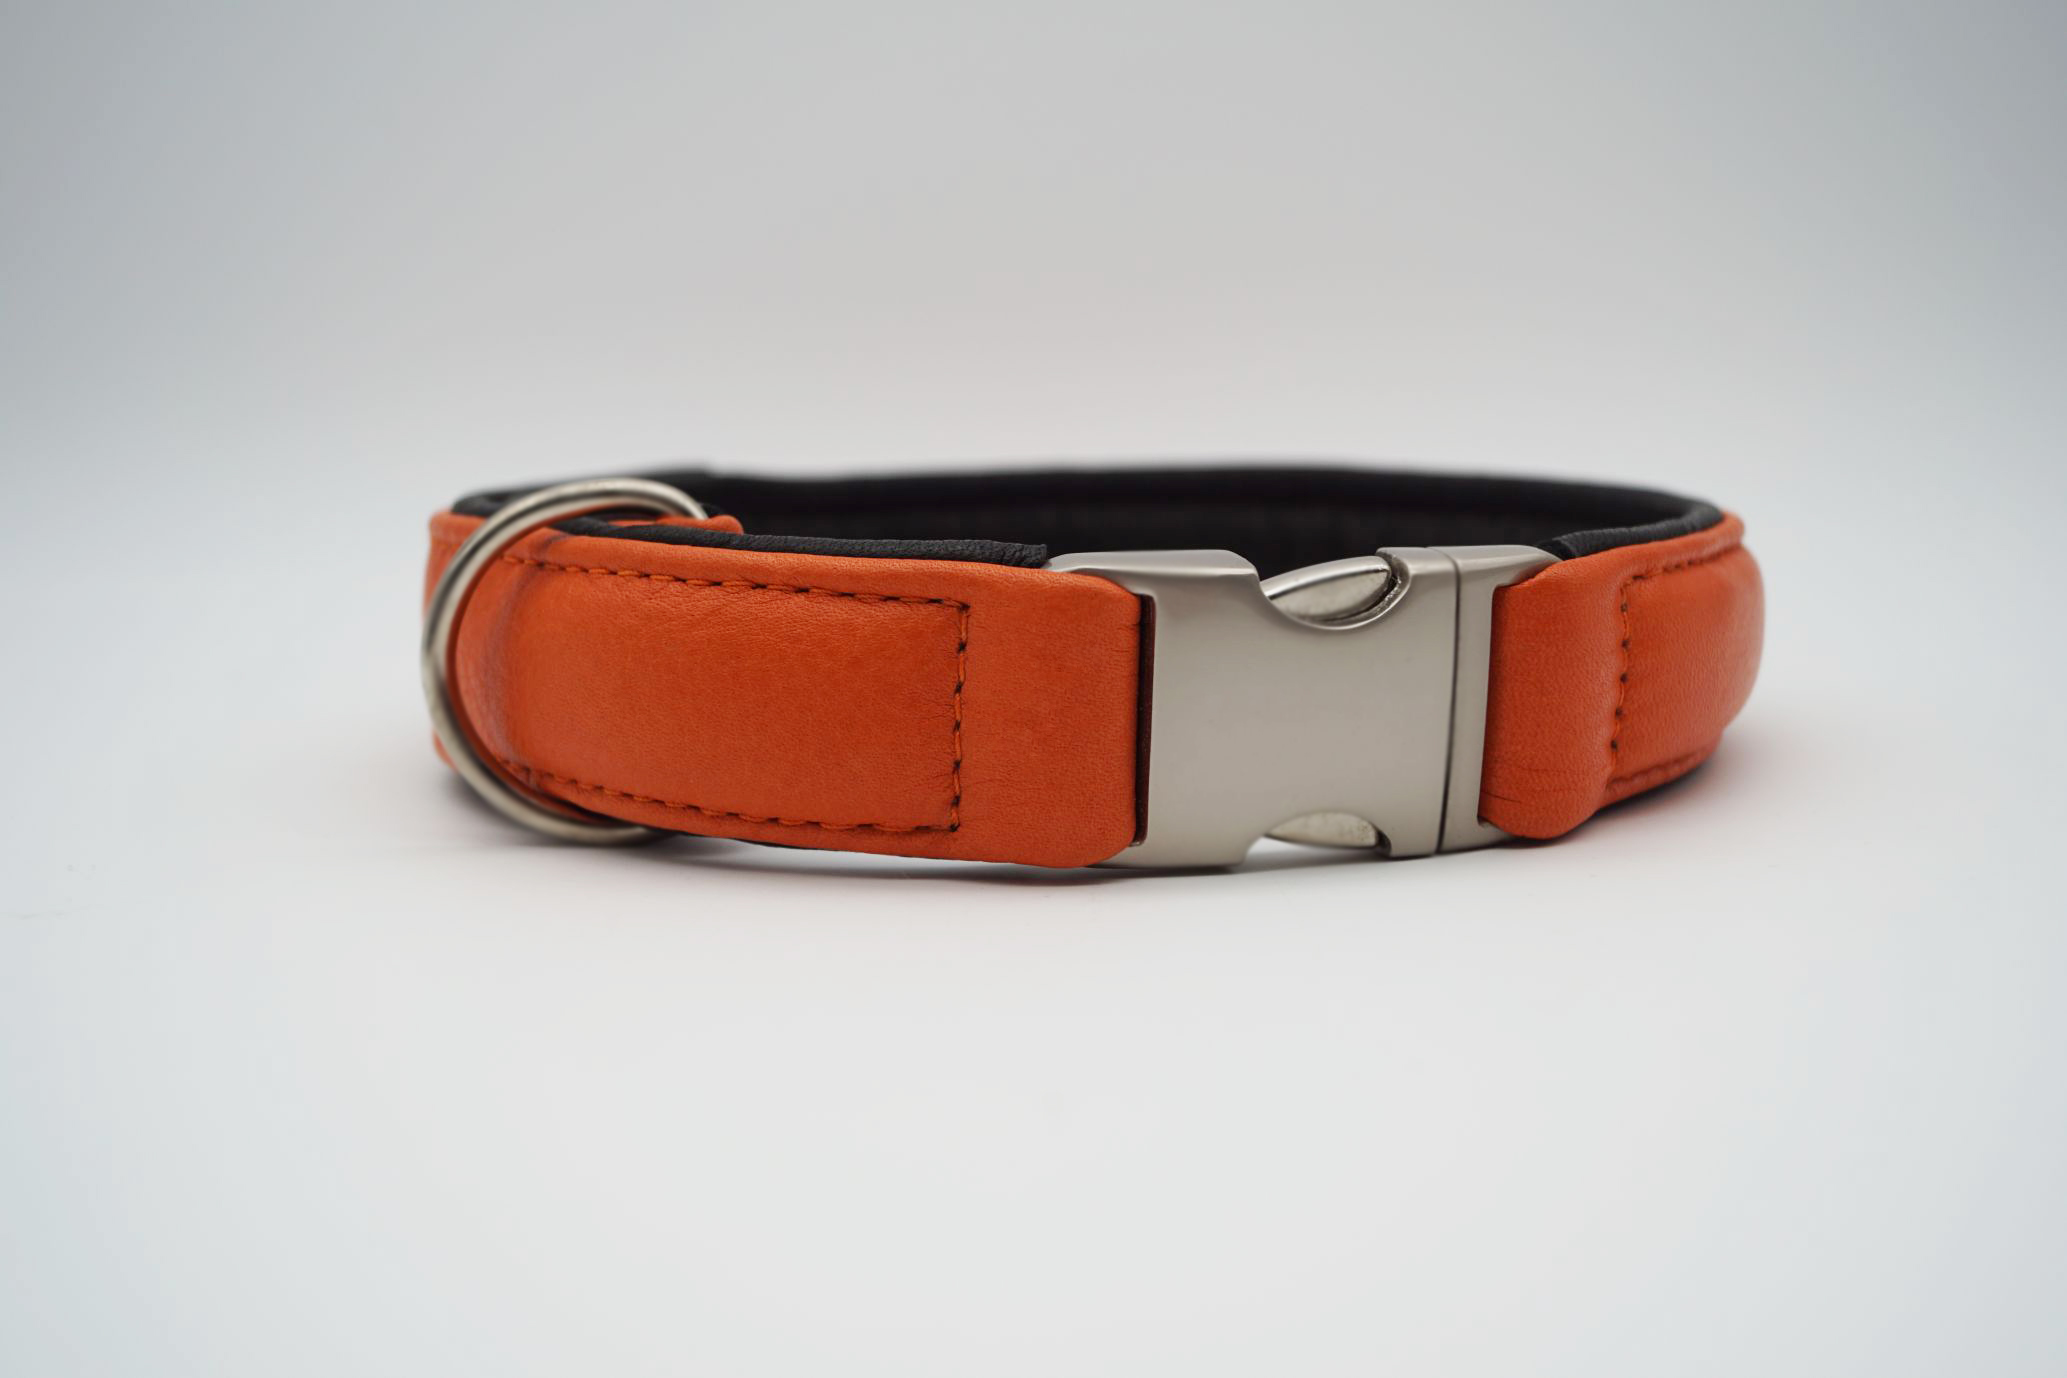 Luxus Hundehalsband in orange braun oder schwarz Leder mit eleganten  Ornamenten, Design Orange - Superpipapo